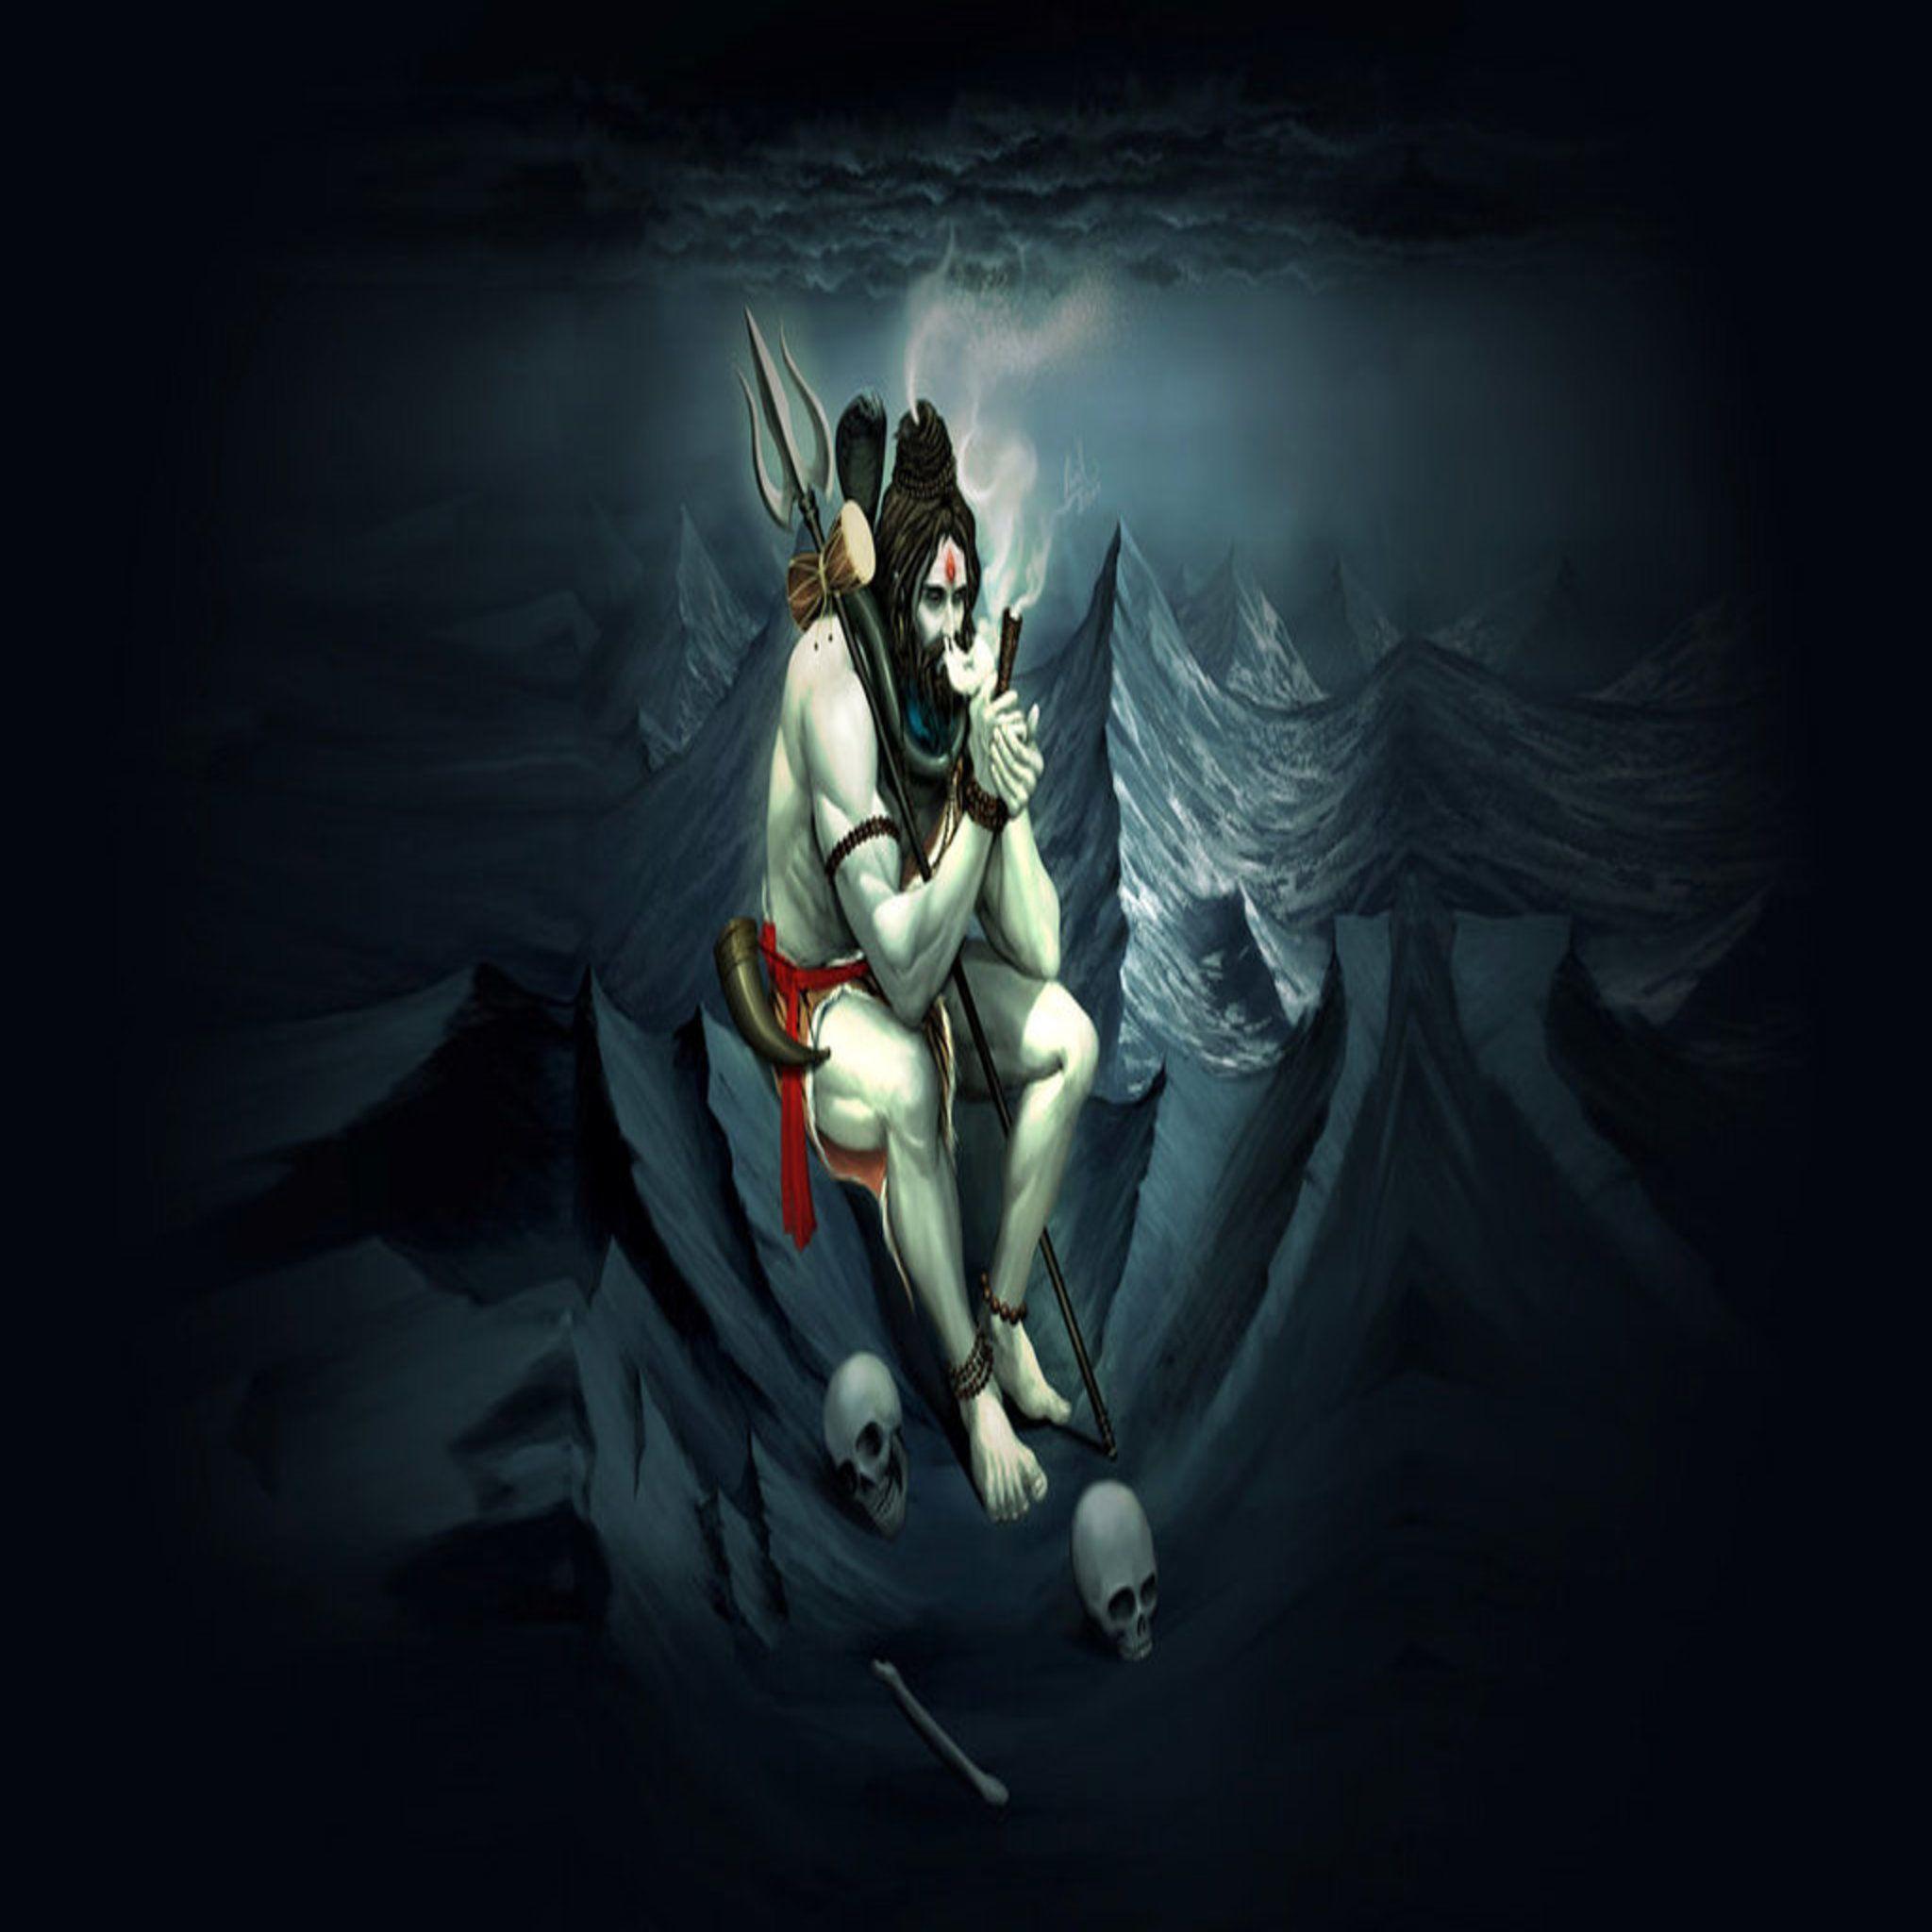 Lord Shiva iPhone Wallpapers - Top Những Hình Ảnh Đẹp